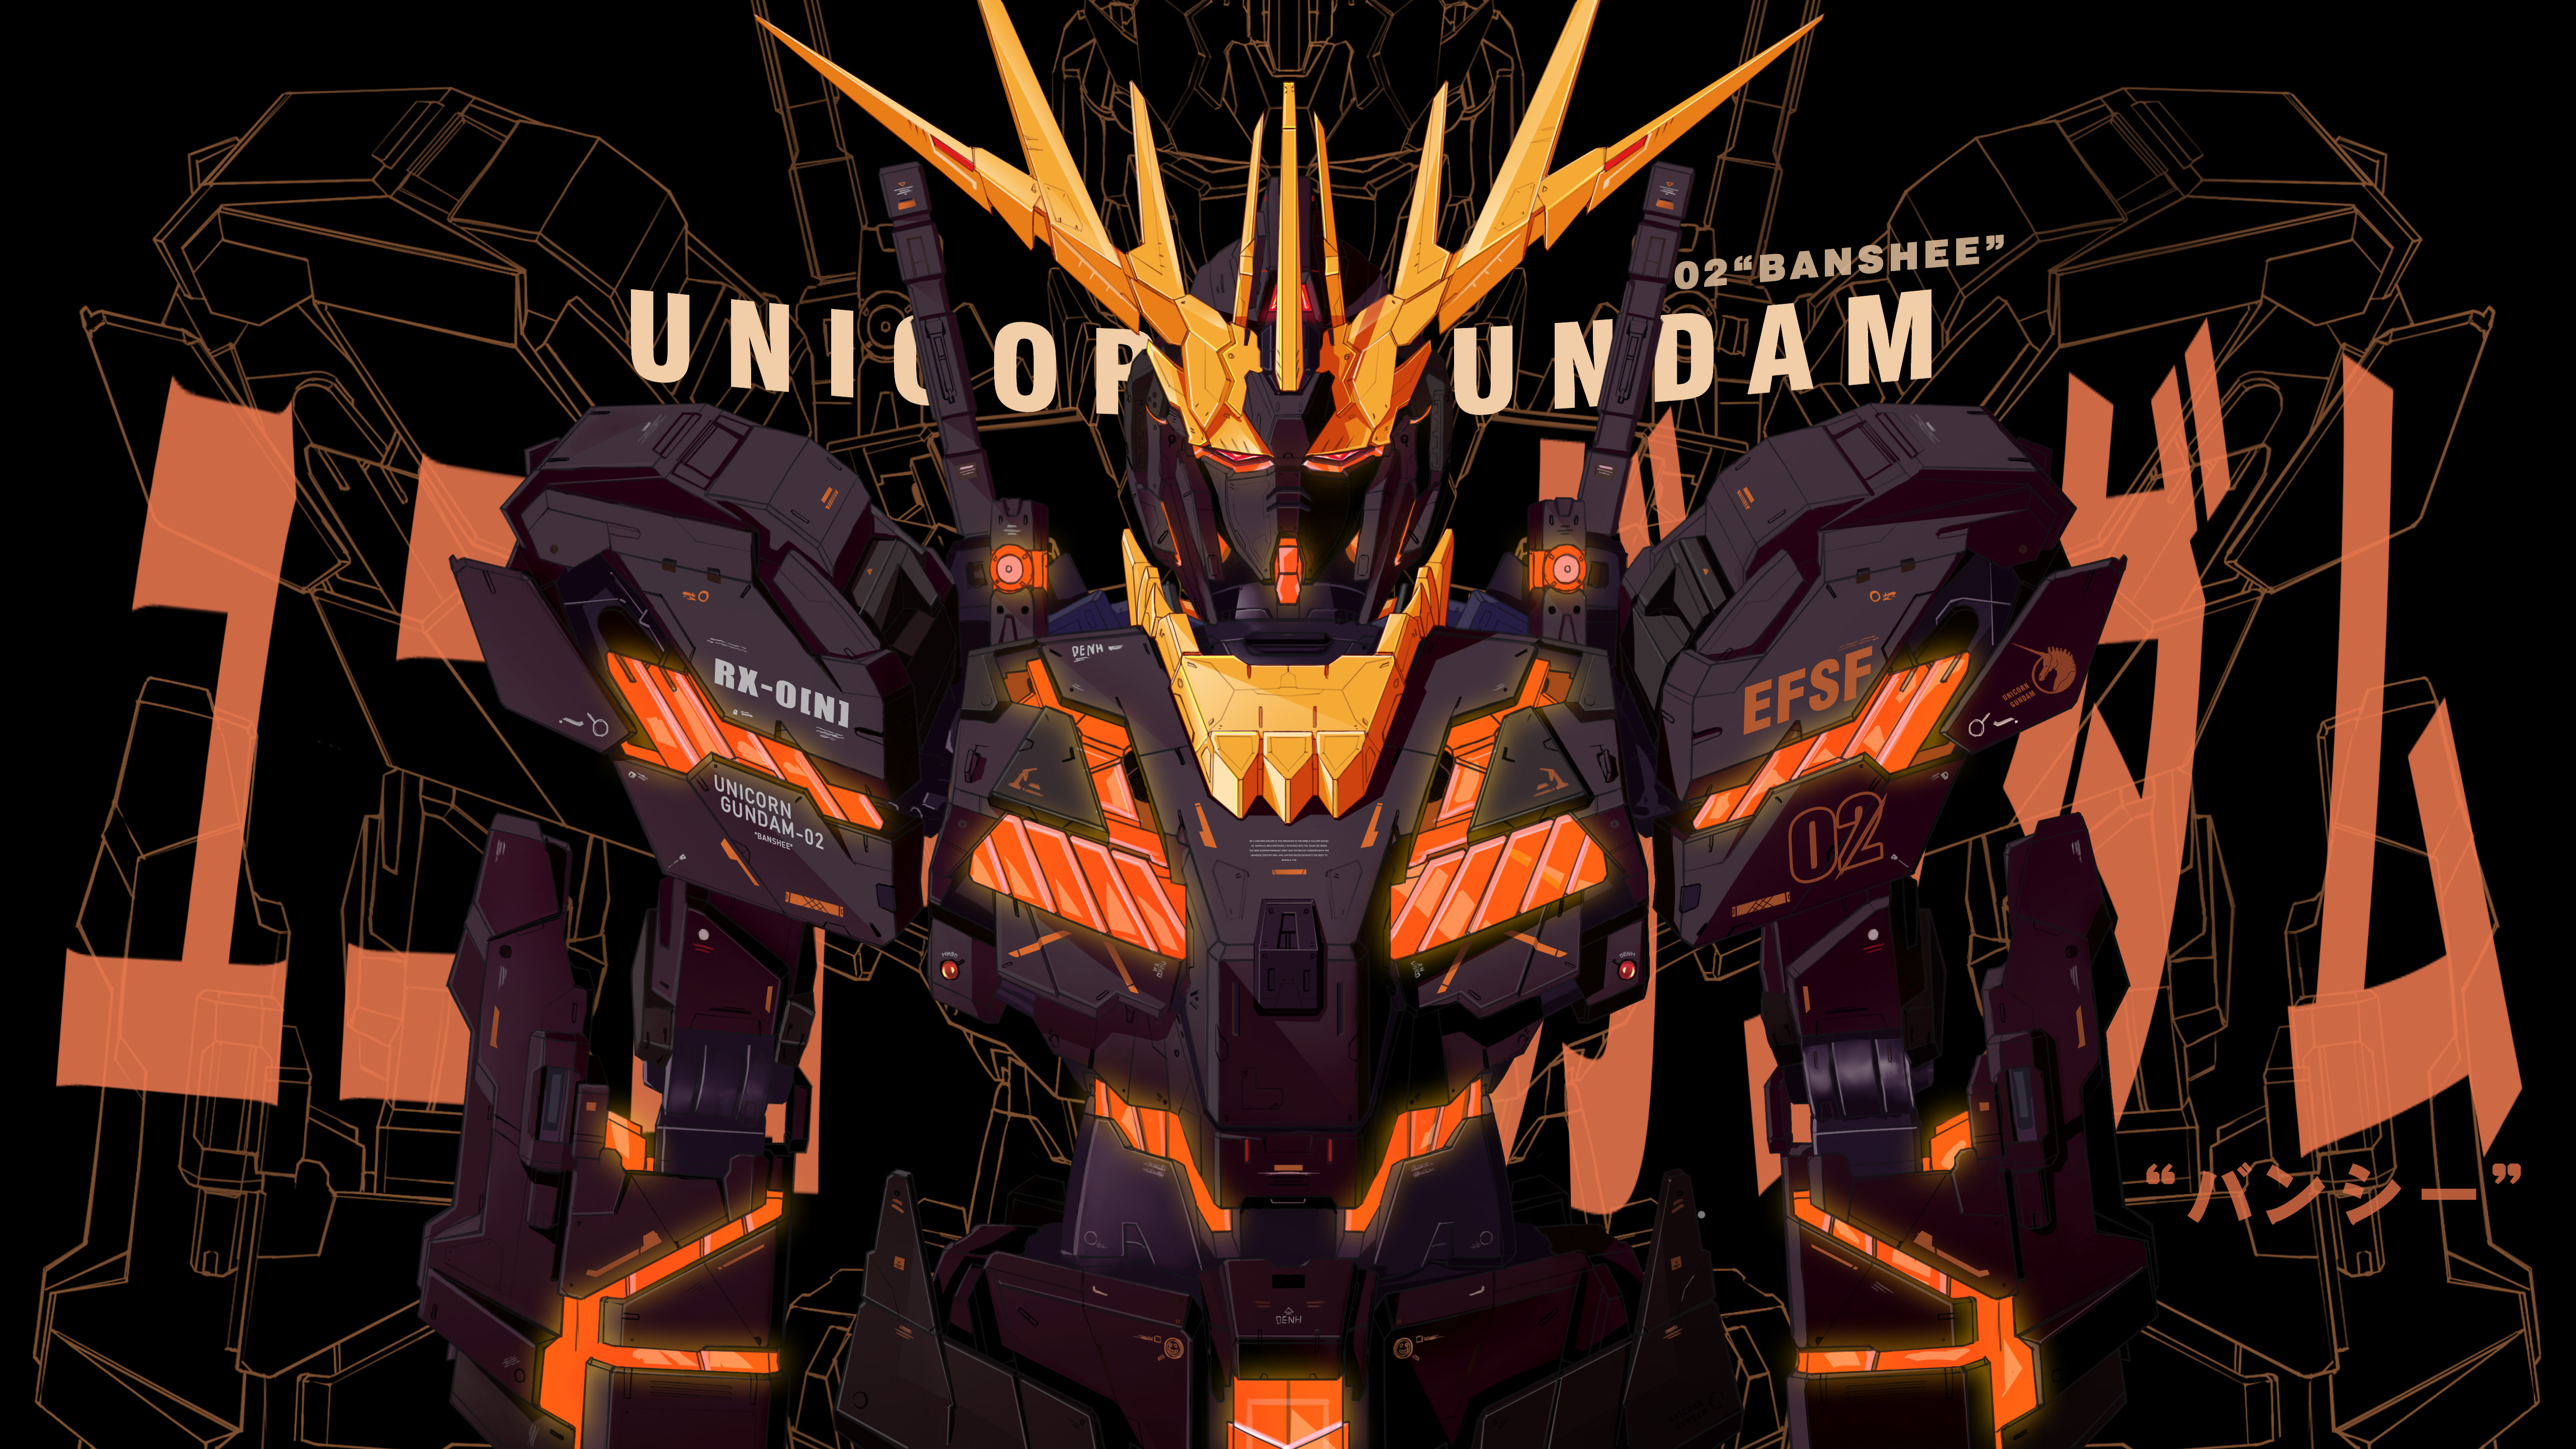 Gundam Unicorn là một trong những series anime Gundam được yêu thích nhất mọi thời đại, và với những bức ảnh Nền 4K đầy sinh động này, bạn sẽ có được một trải nghiệm siêu thực khi mà robot Gundam trên màn hình trông như thật vậy!